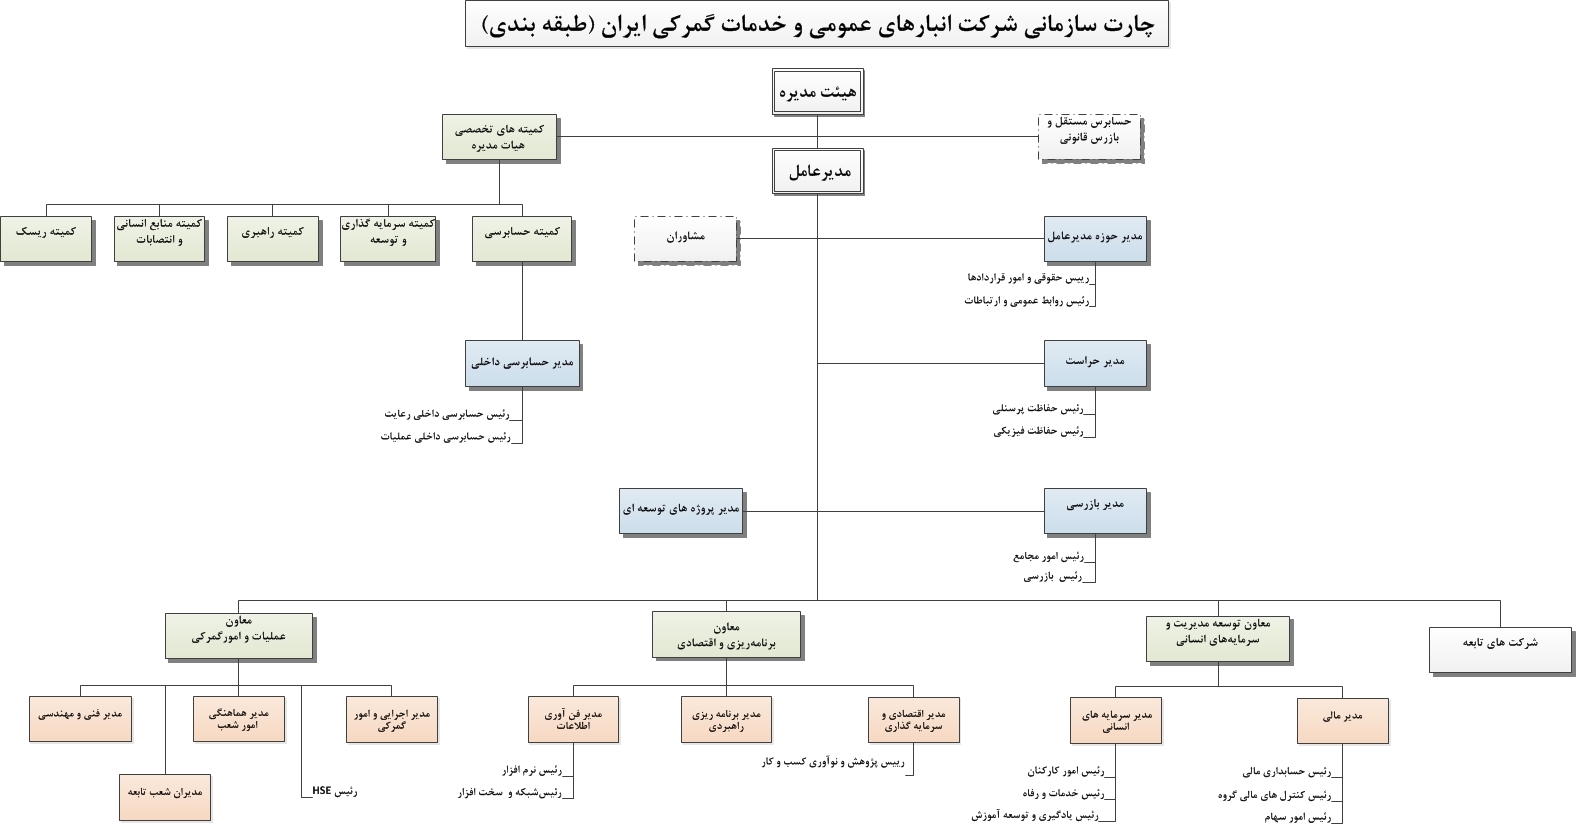 چارت سازمانی ستاد مرکزی شرکت انبارهای عمومی و خدمات گمرکی ایران